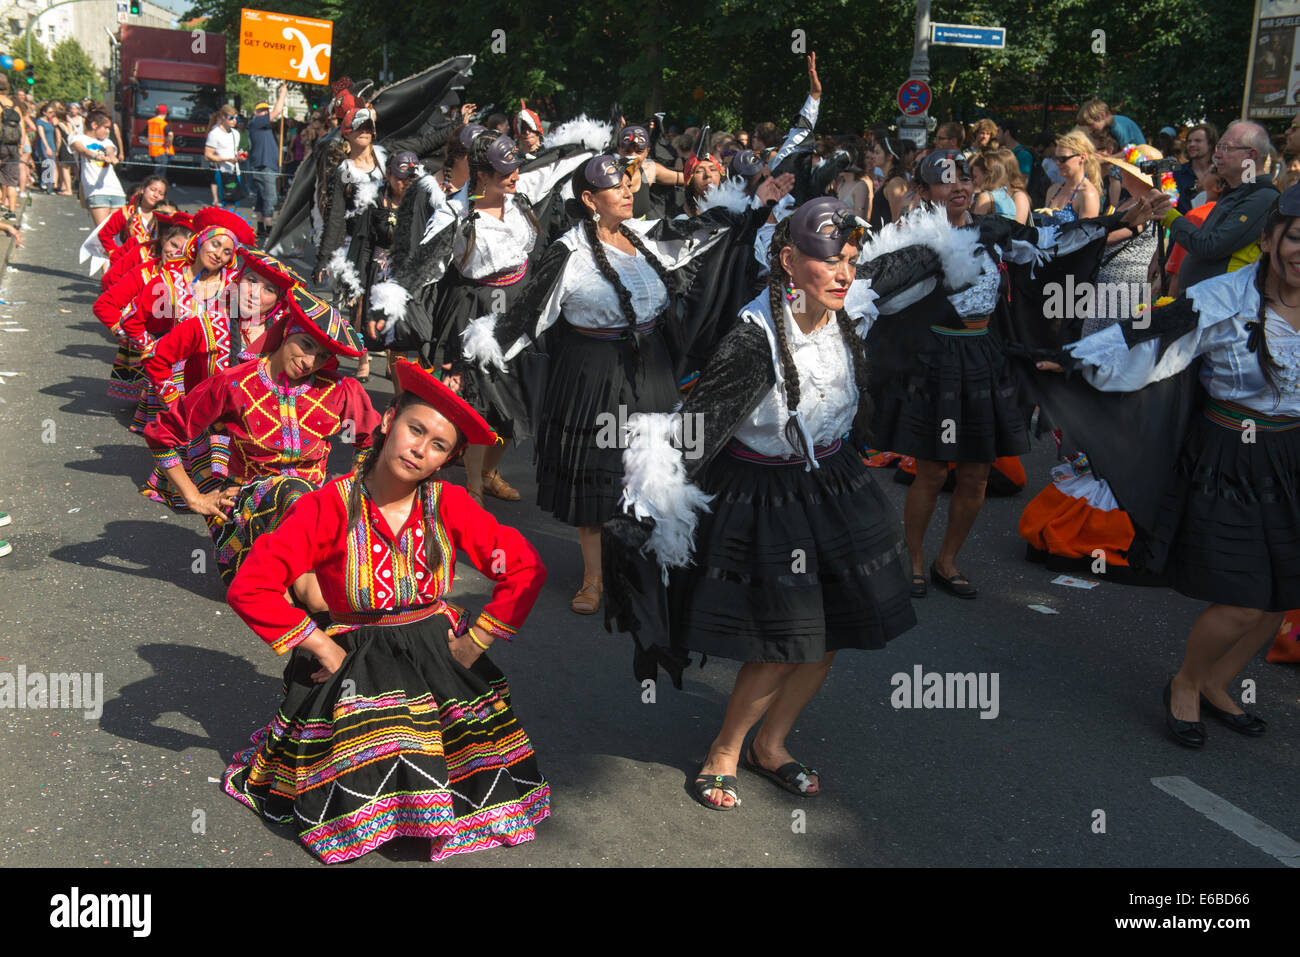 Teilnehmer am Karneval der Kulturen (Karneval der Kulturen), eines der wichtigsten städtischen Festivals in Berlin Stockfoto